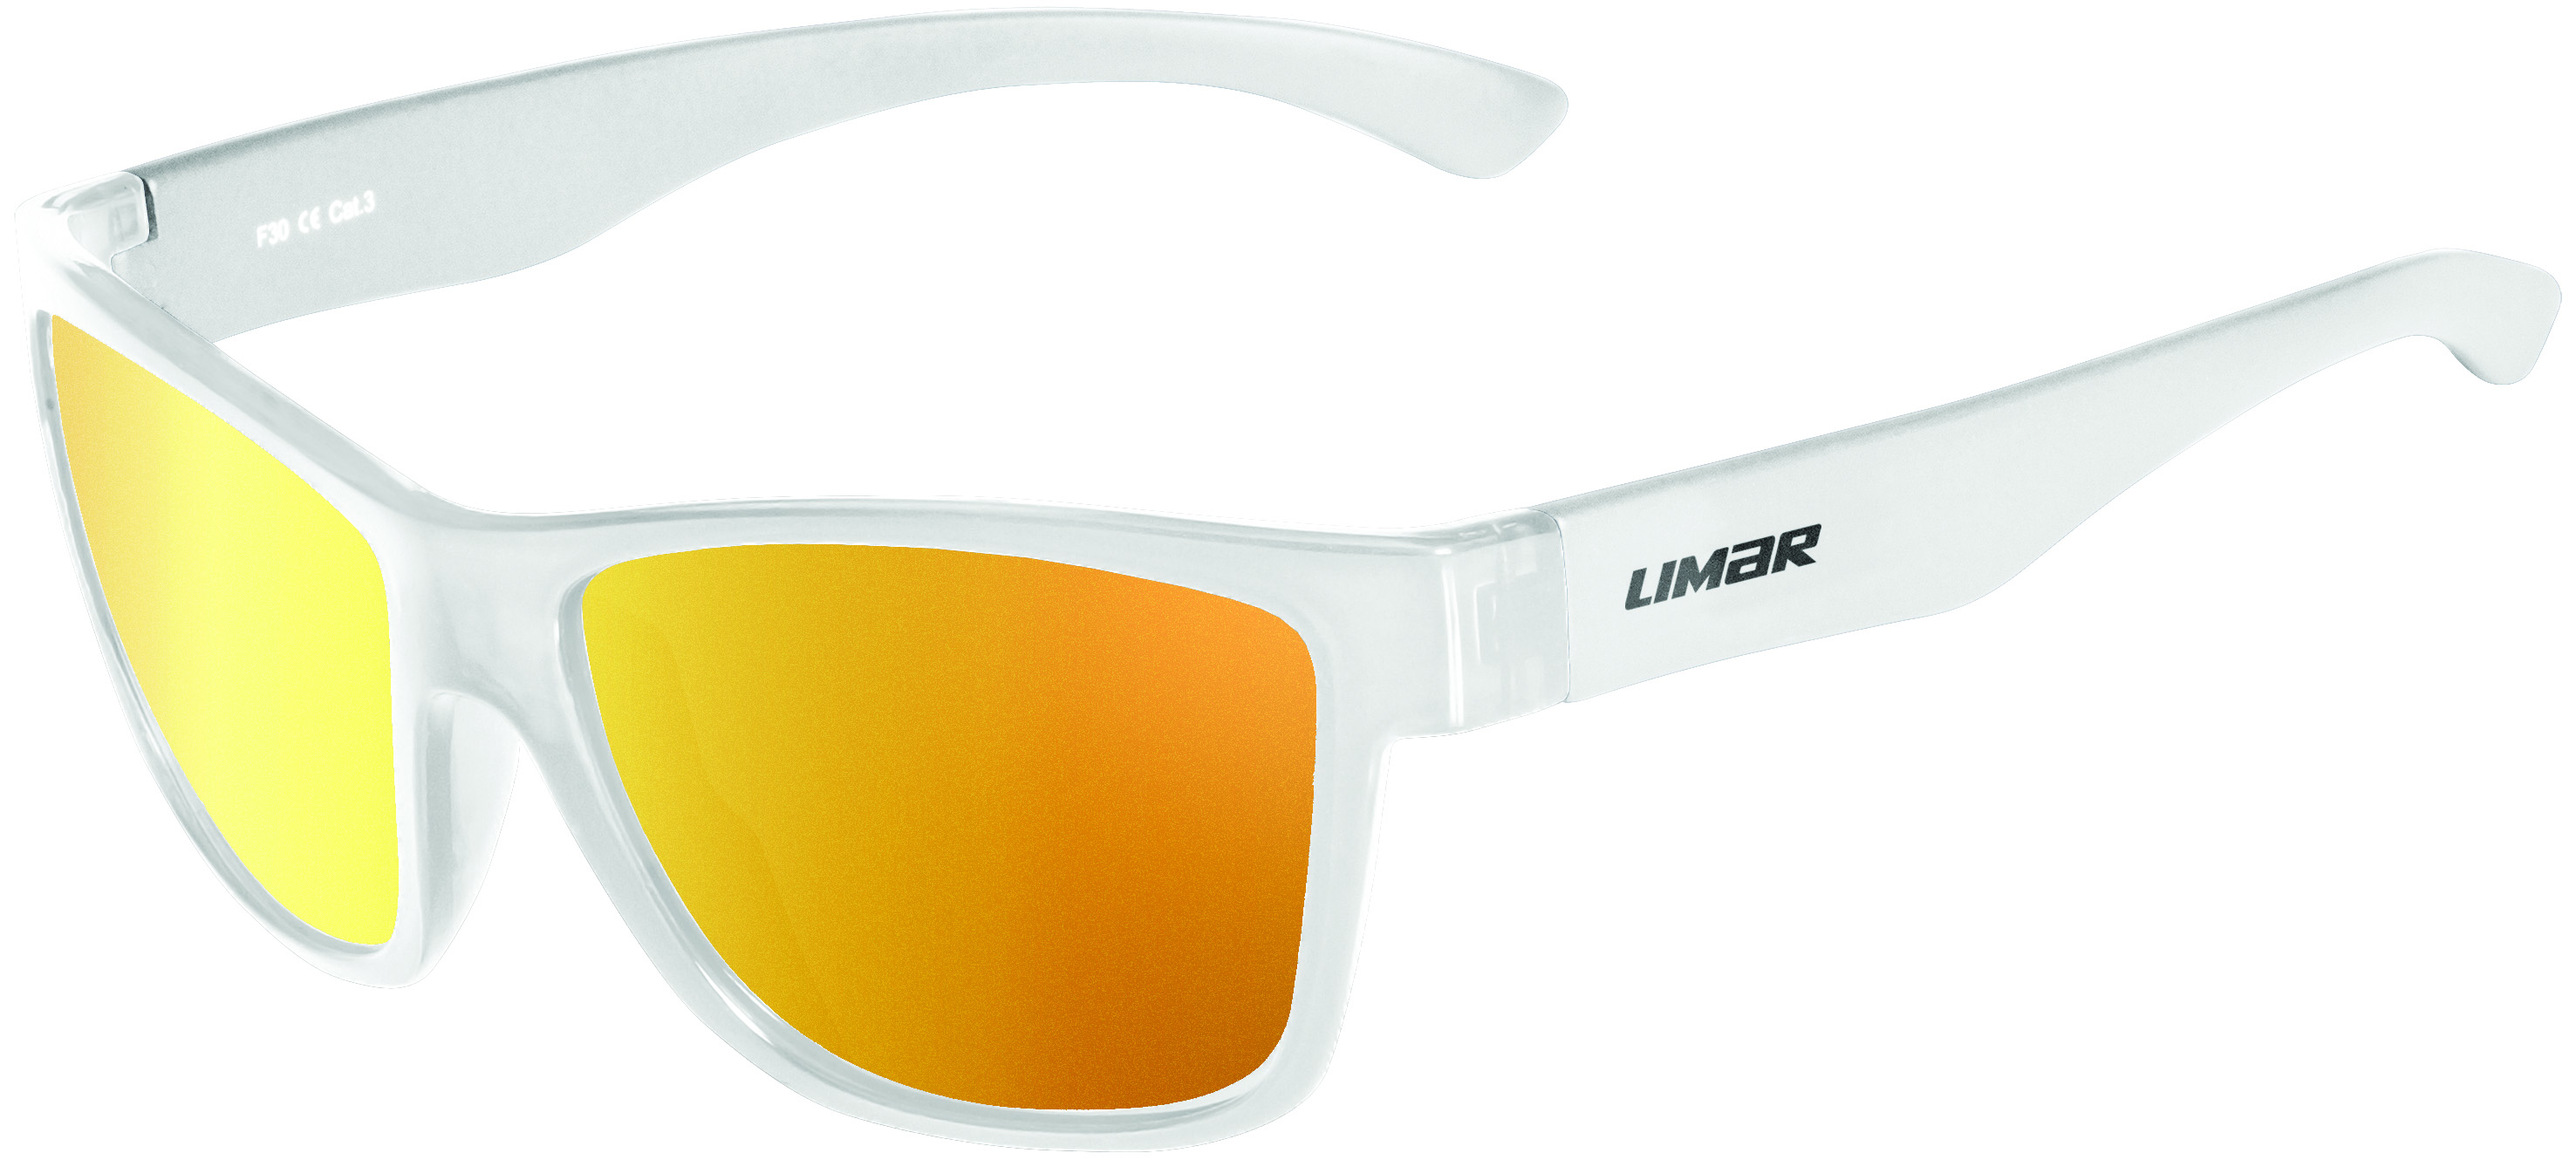 Очки Limar F30 PC белые с одной поликарбонатной линзой фото 